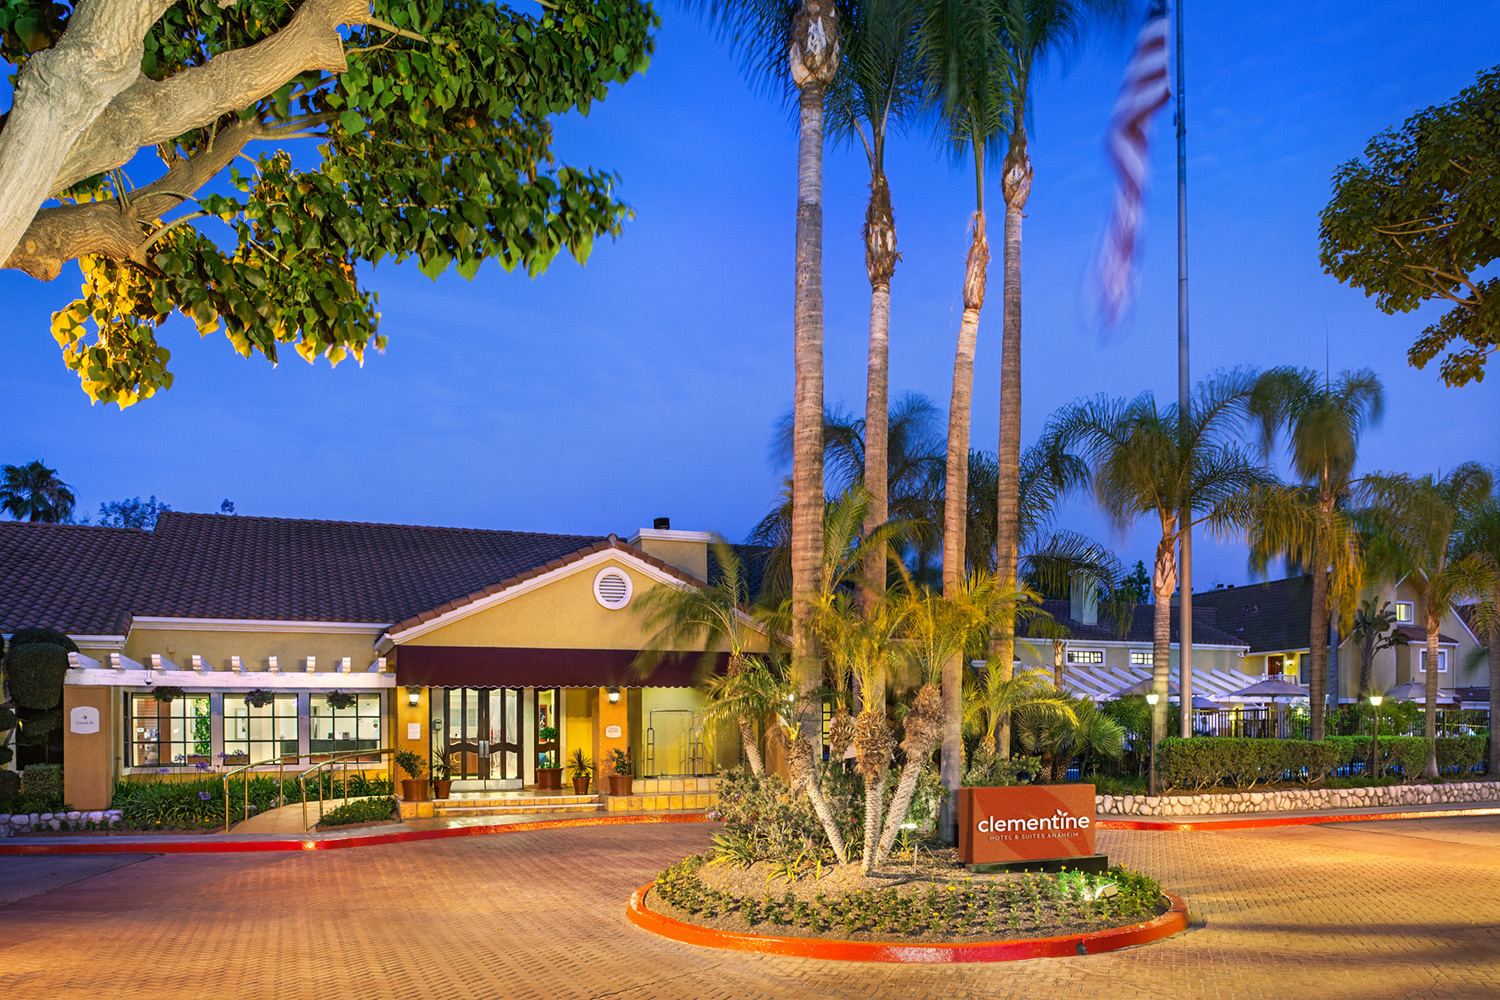 Photo of Clementine Hotel & Suites Anaheim, Anaheim, CA